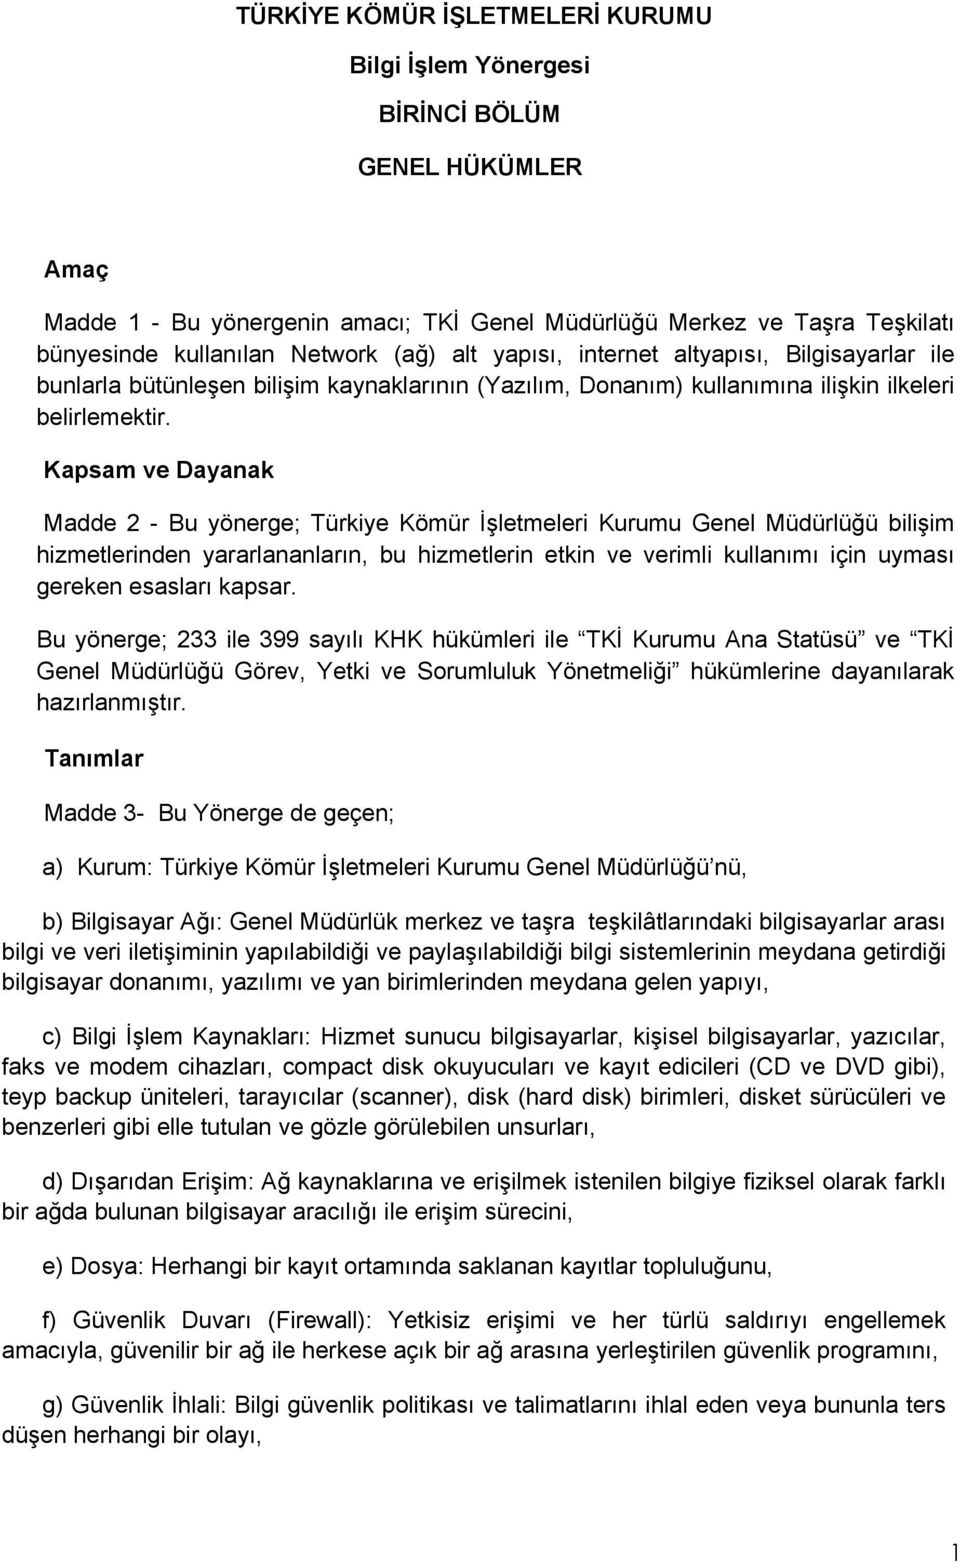 Kapsam ve Dayanak Madde 2 - Bu yönerge; Türkiye Kömür İşletmeleri Kurumu Genel Müdürlüğü bilişim hizmetlerinden yararlananların, bu hizmetlerin etkin ve verimli kullanımı için uyması gereken esasları